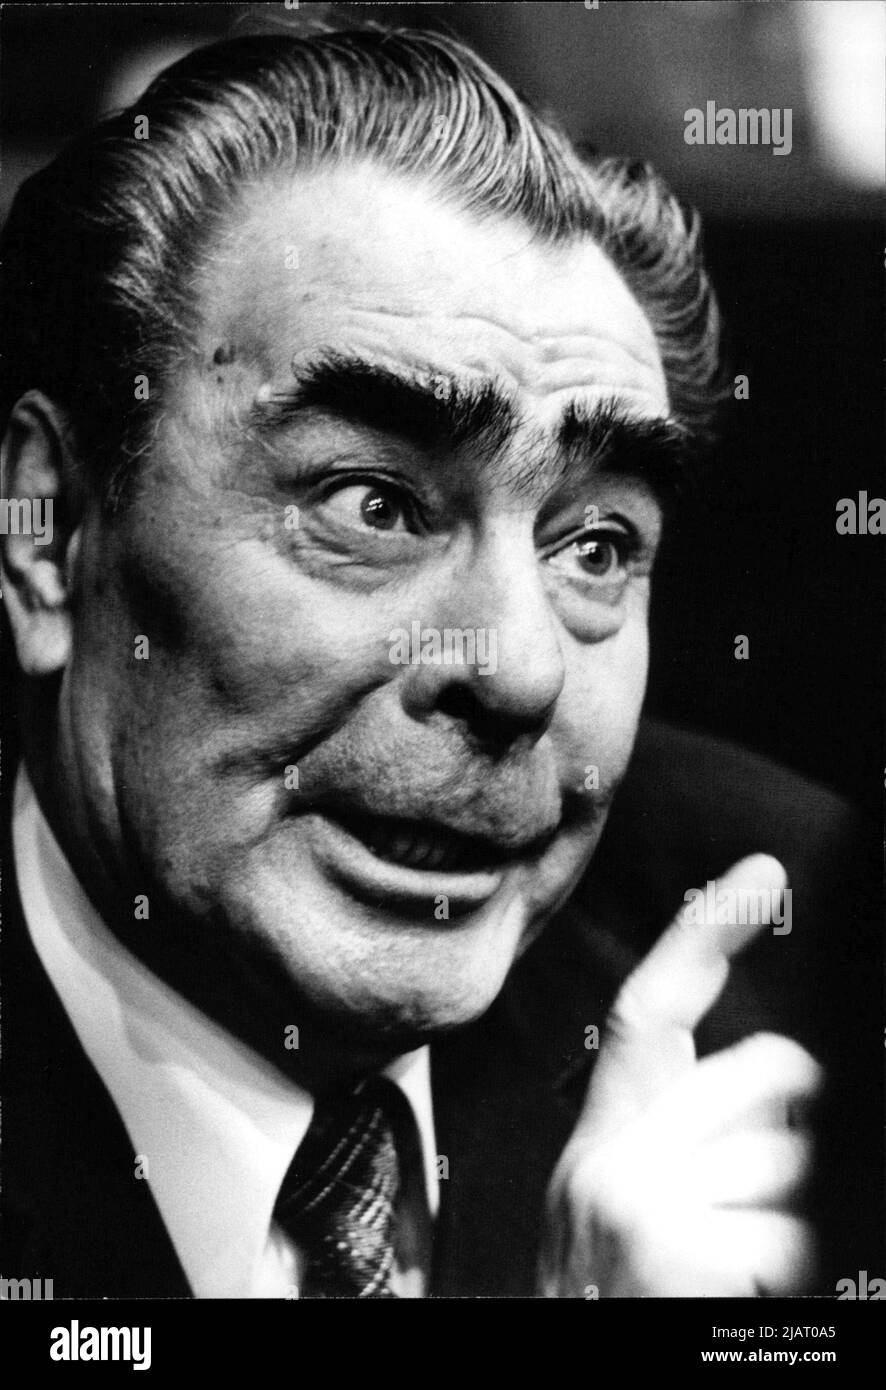 Der sowjetische Staats- und Parteichef Leonid Brezhnev. Foto Stock